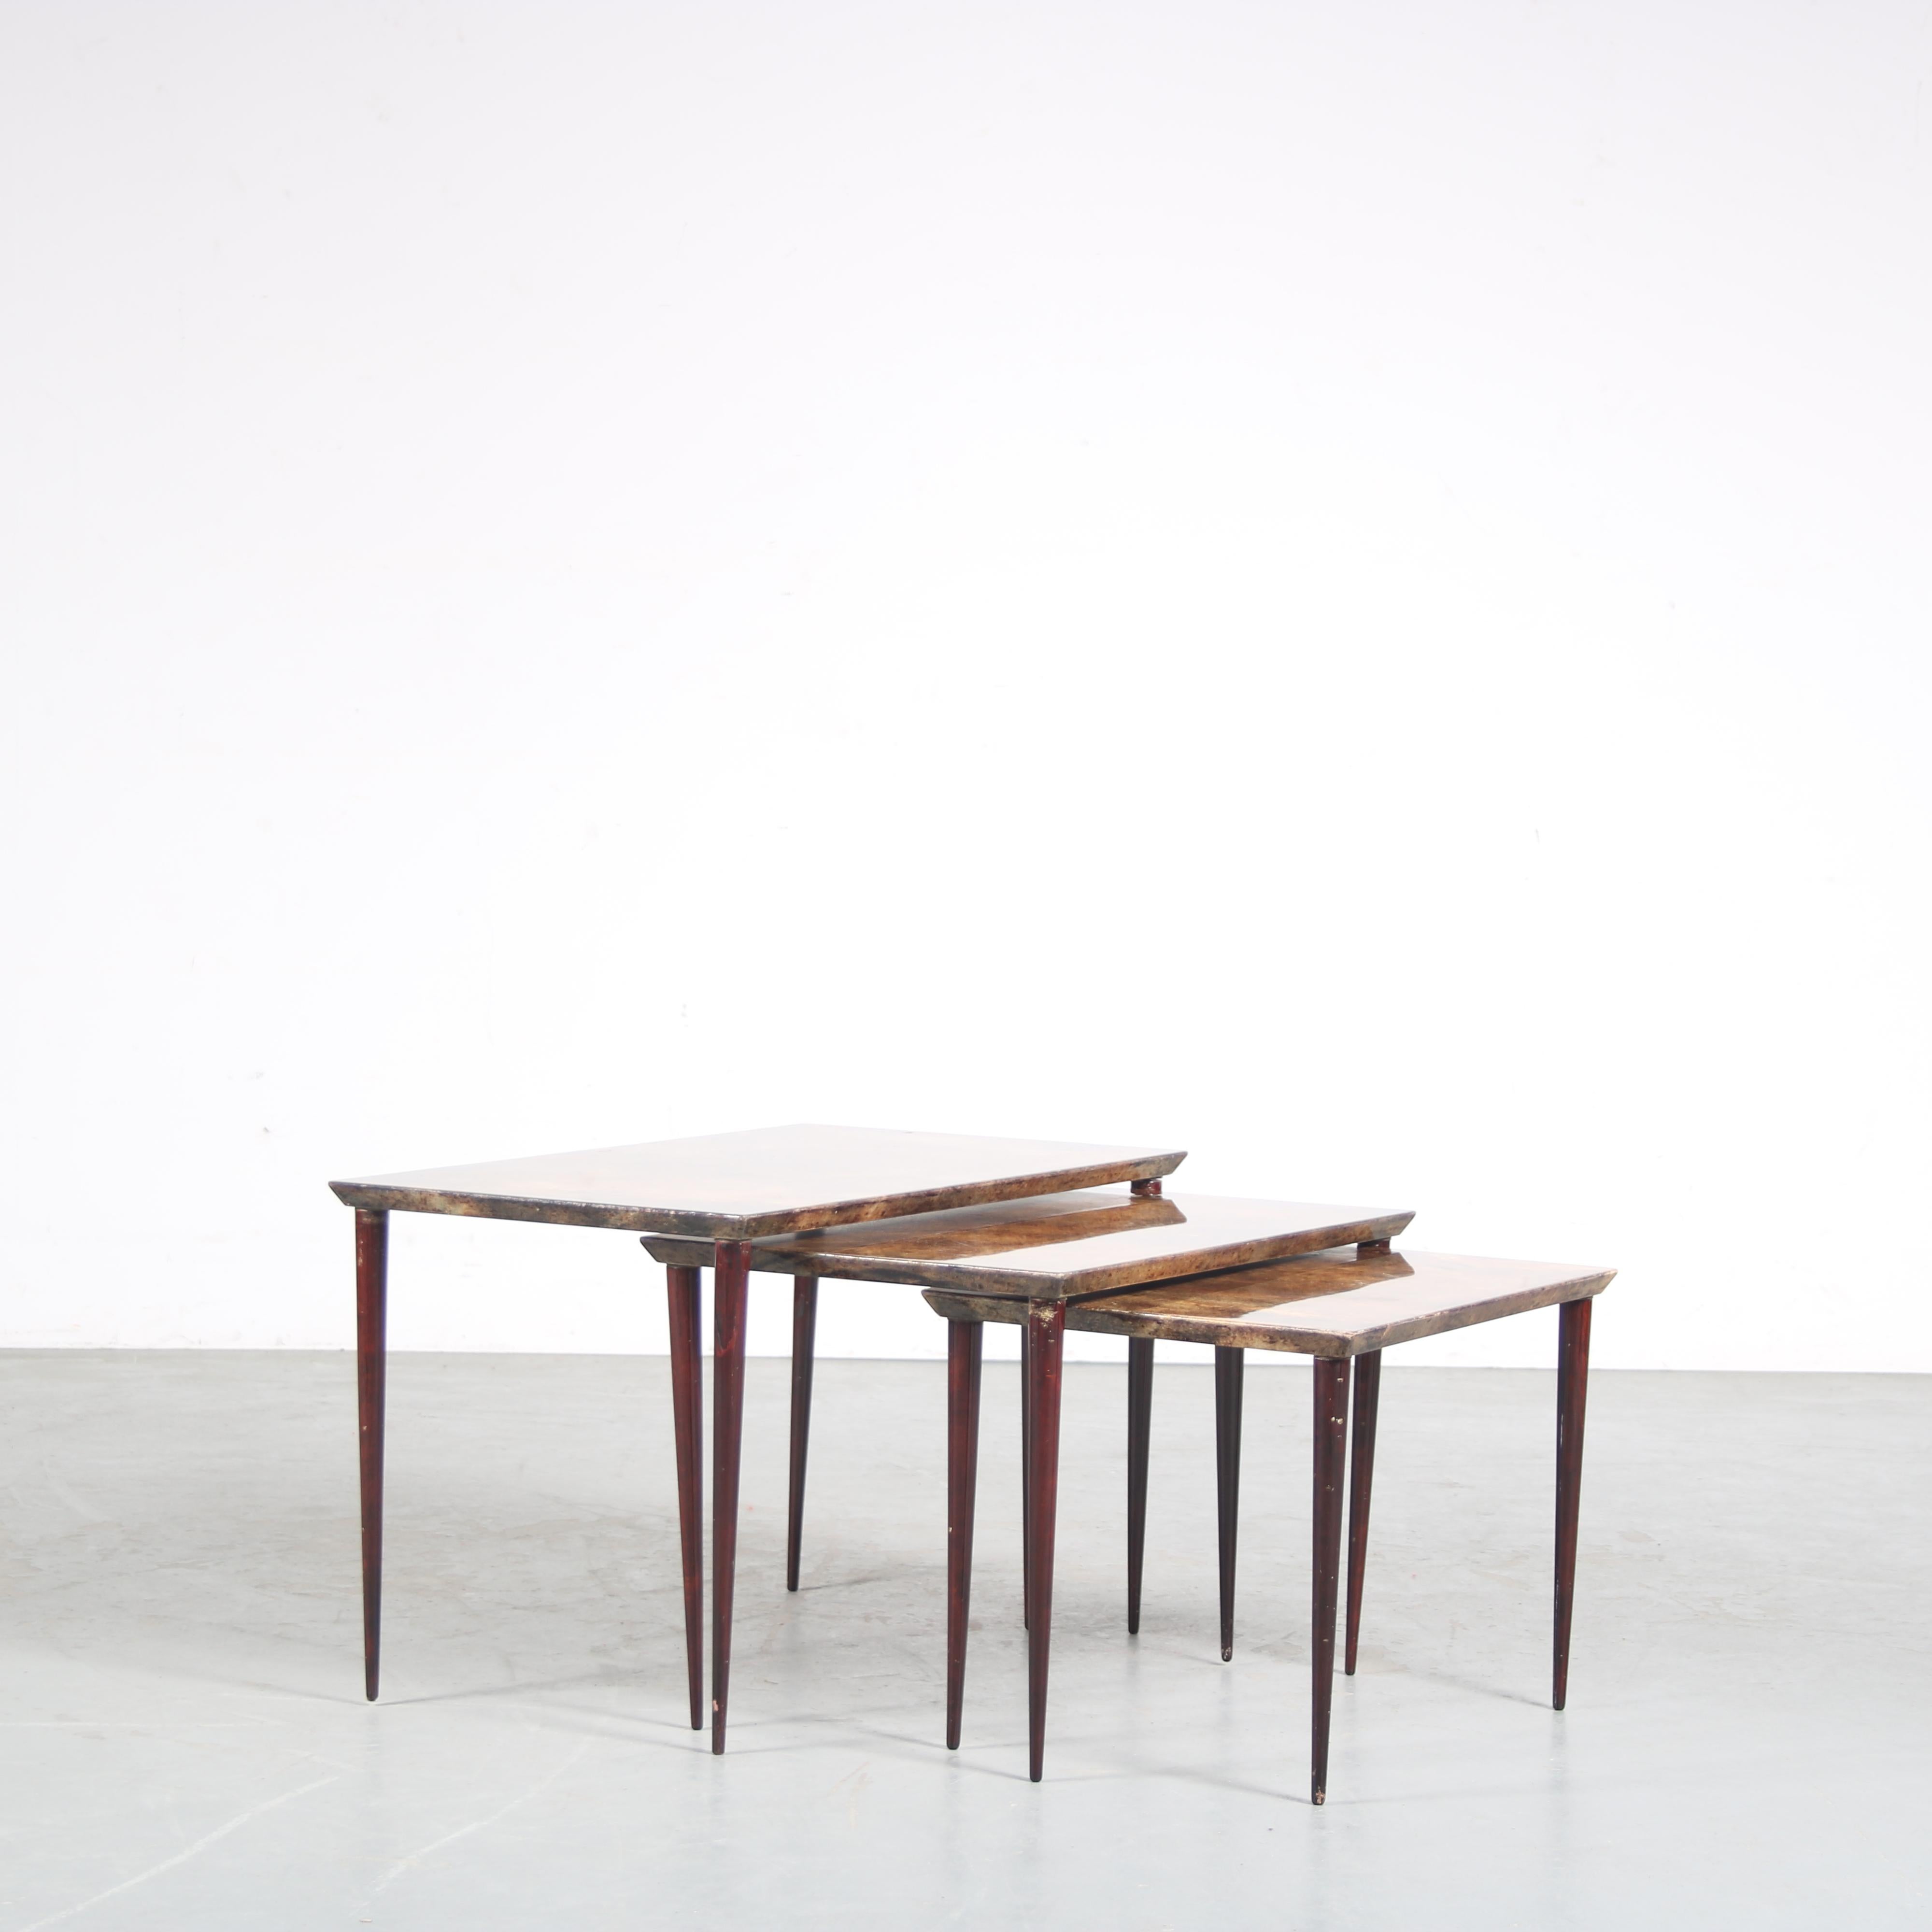 Ein schönes Set aus drei Tischen, entworfen von Aldo Tura in Italien um 1950.

Die Tische sind alle aus hochwertigem dunkelbraunem Holz mit Pergamentplatten gefertigt, was ihnen einen einzigartigen Stil mit hohem Wiedererkennungswert verleiht. Die